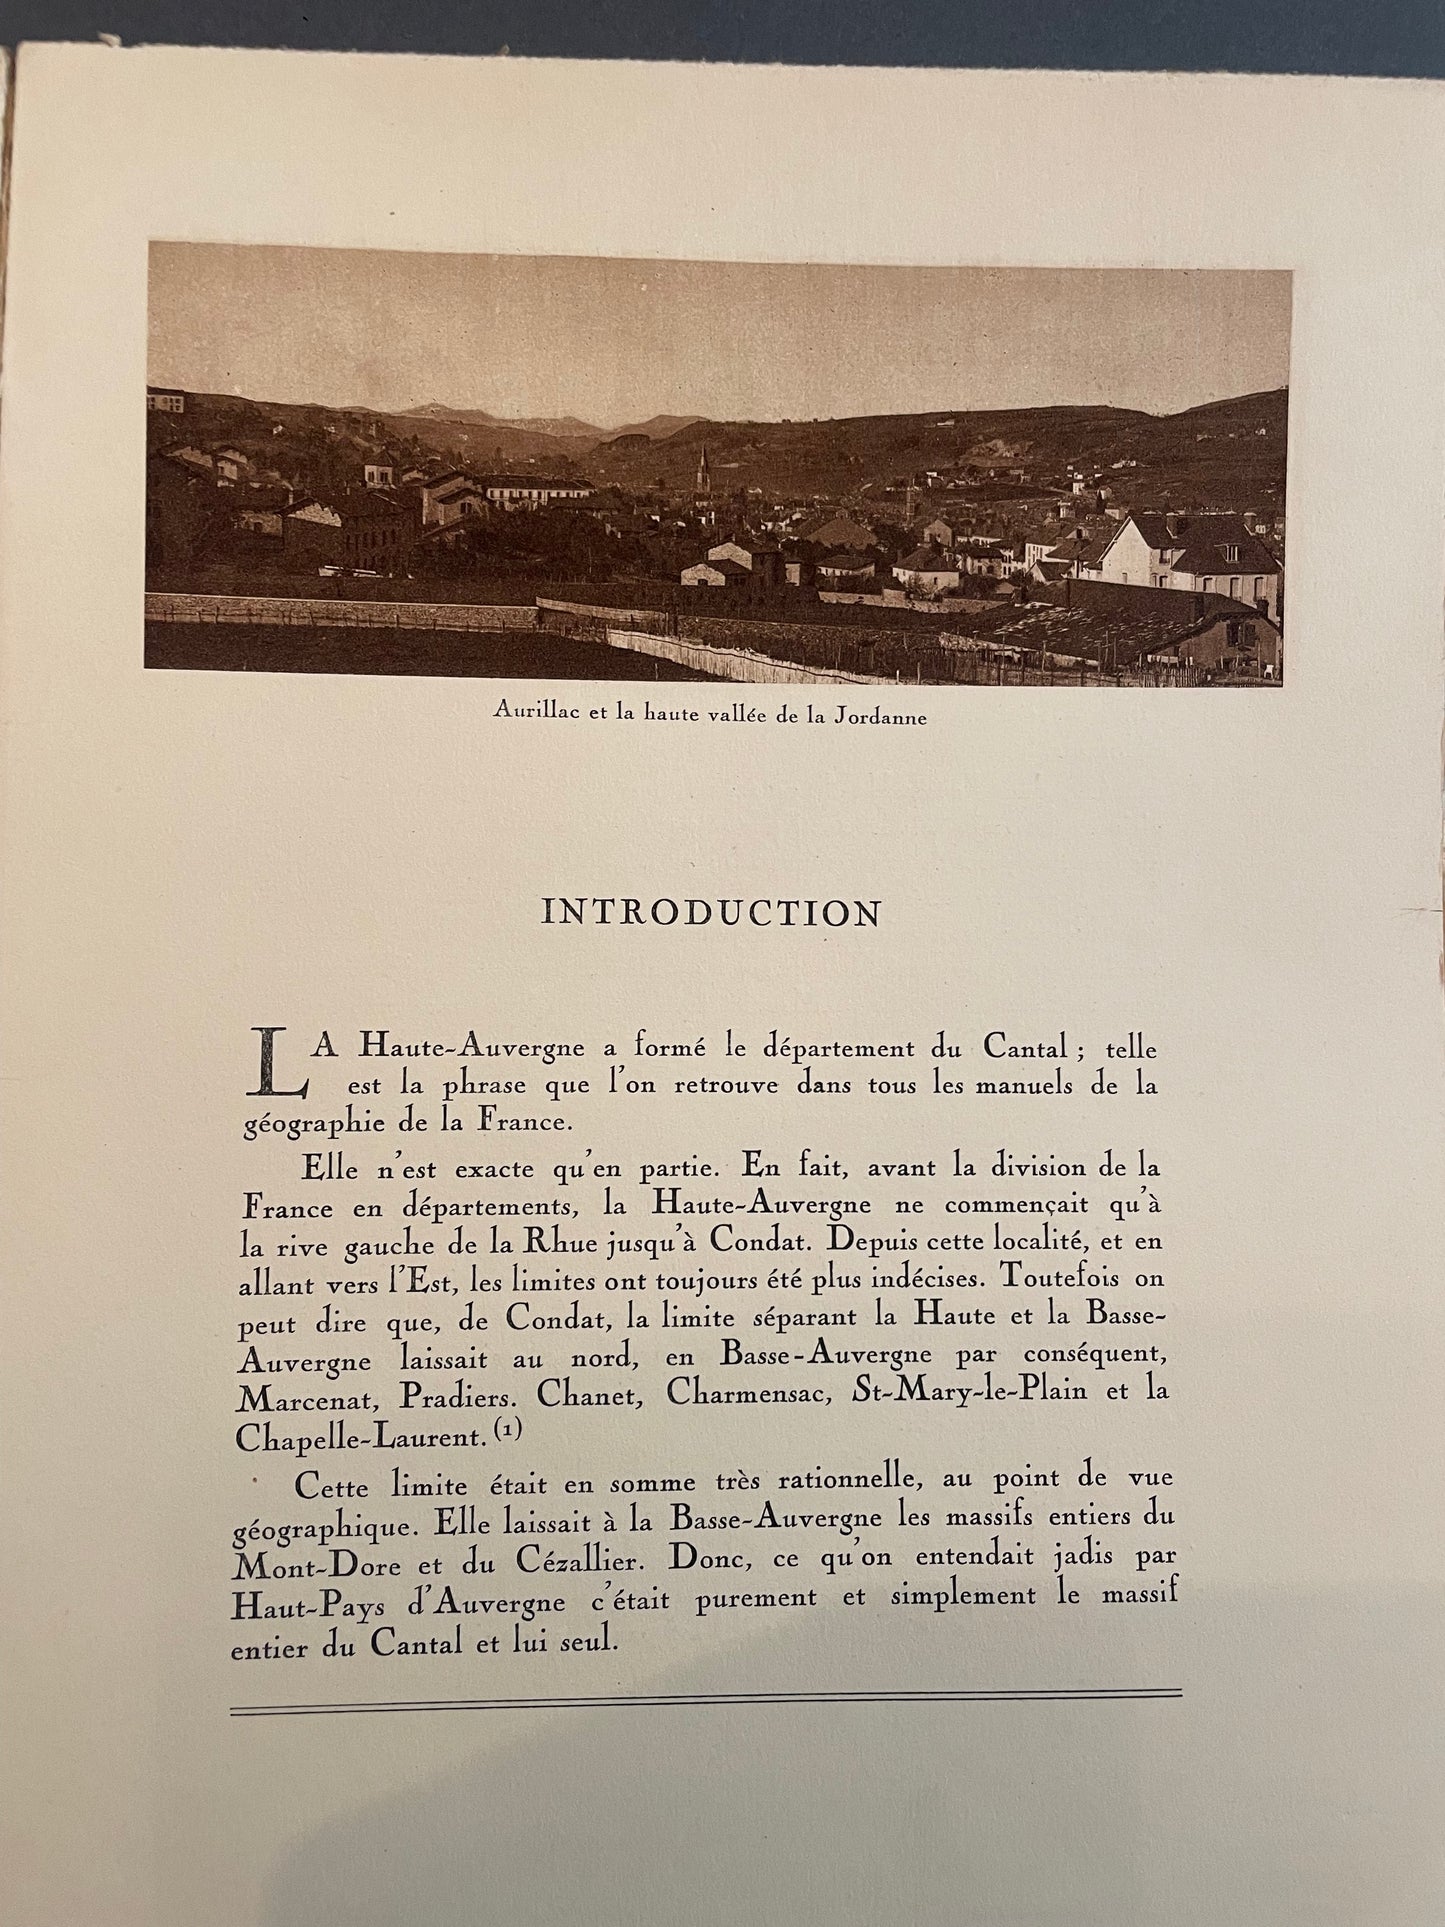 La Haute Auvergne, Farges Louis US H A Aurillac 1928